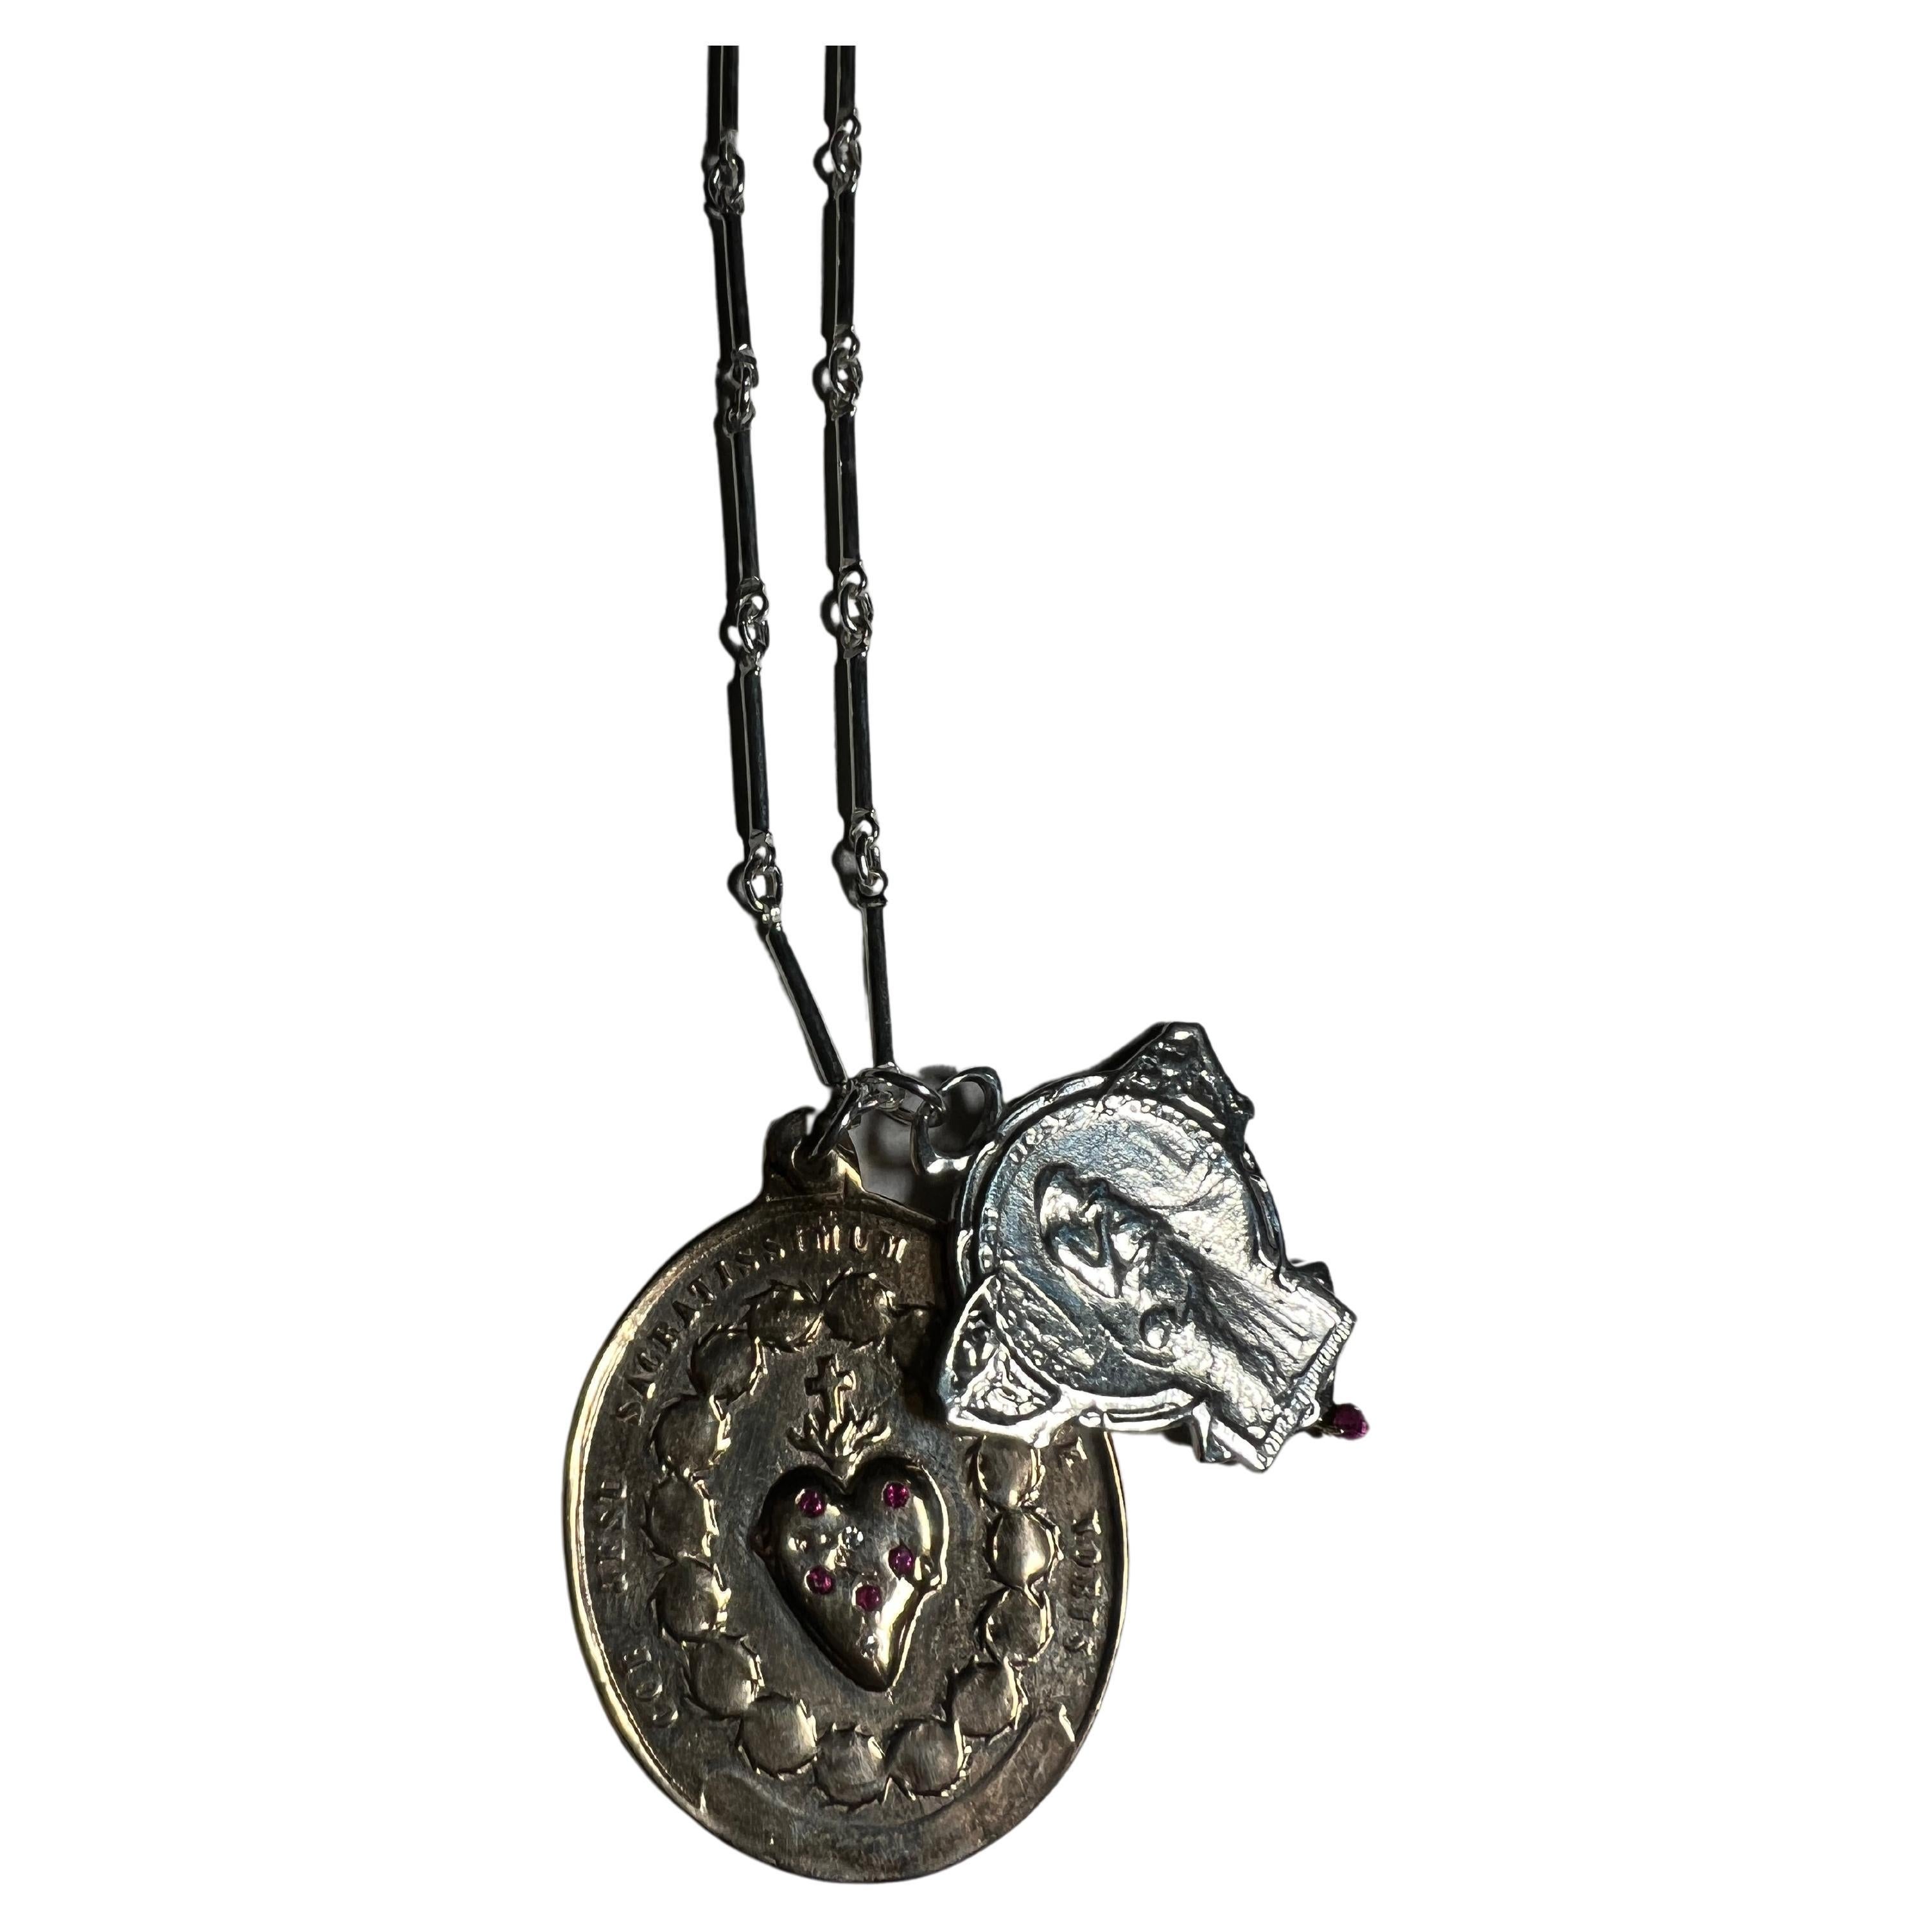 Médaille du Sacré-Cœur en bronze recouverte de rubis et de diamants blancs et médaille Art Nouveau en argent avec un rubis suspendue à une chaîne en argent. 
Taille : 28